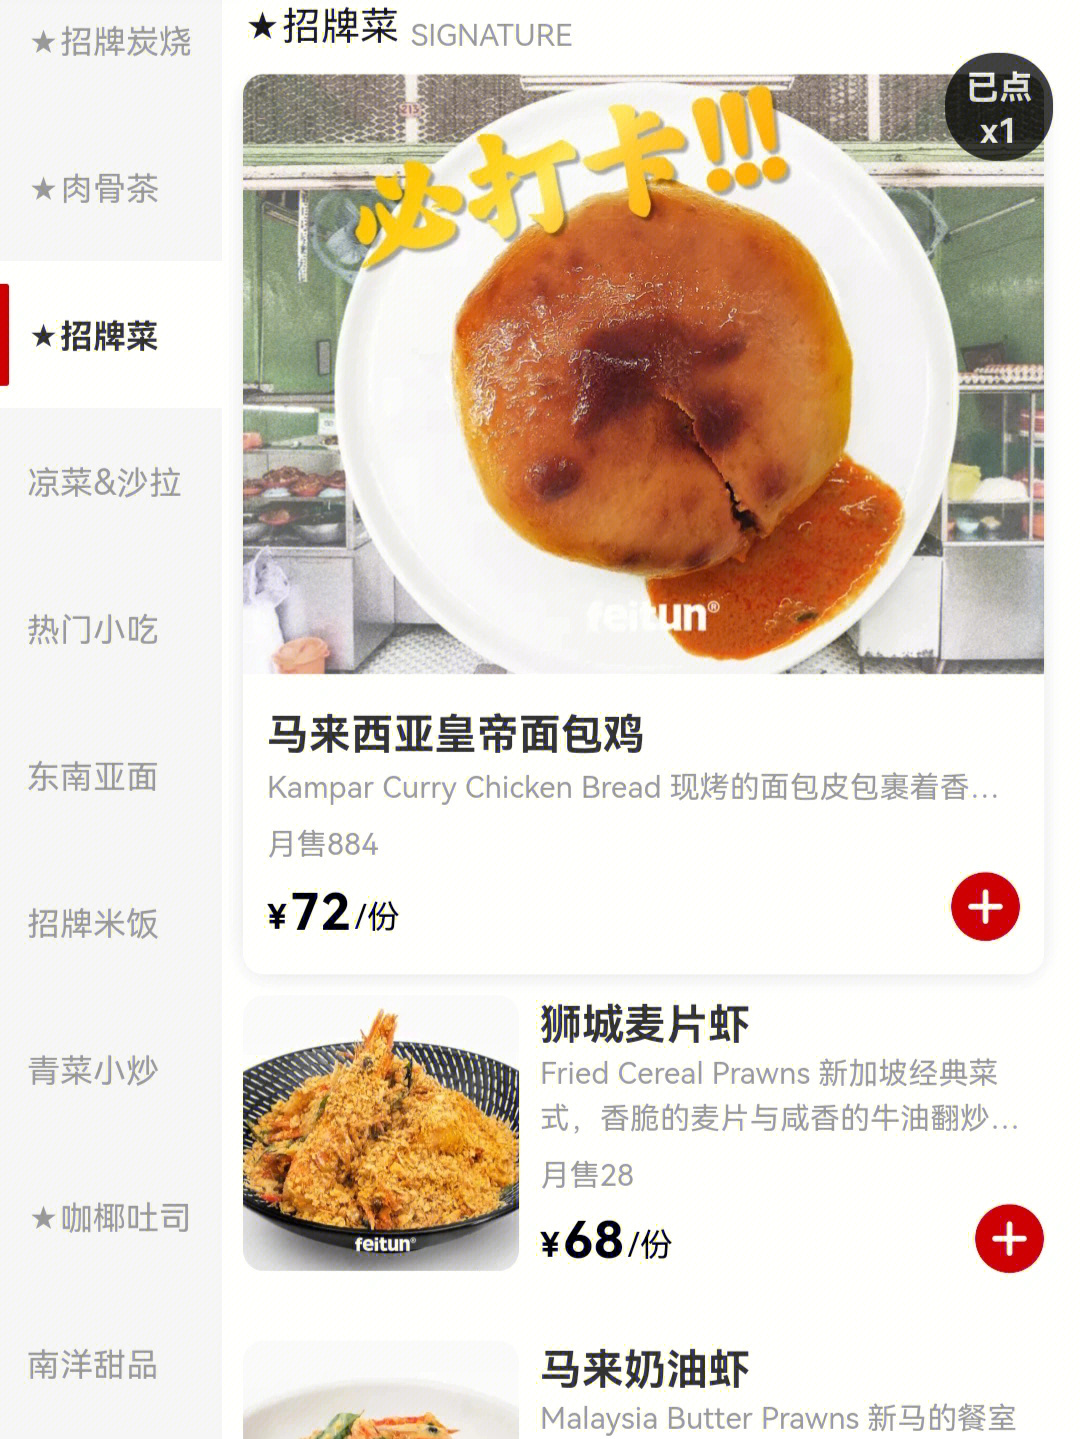 北京路美食餐厅马来西亚肉骨茶情侣闺蜜聚餐